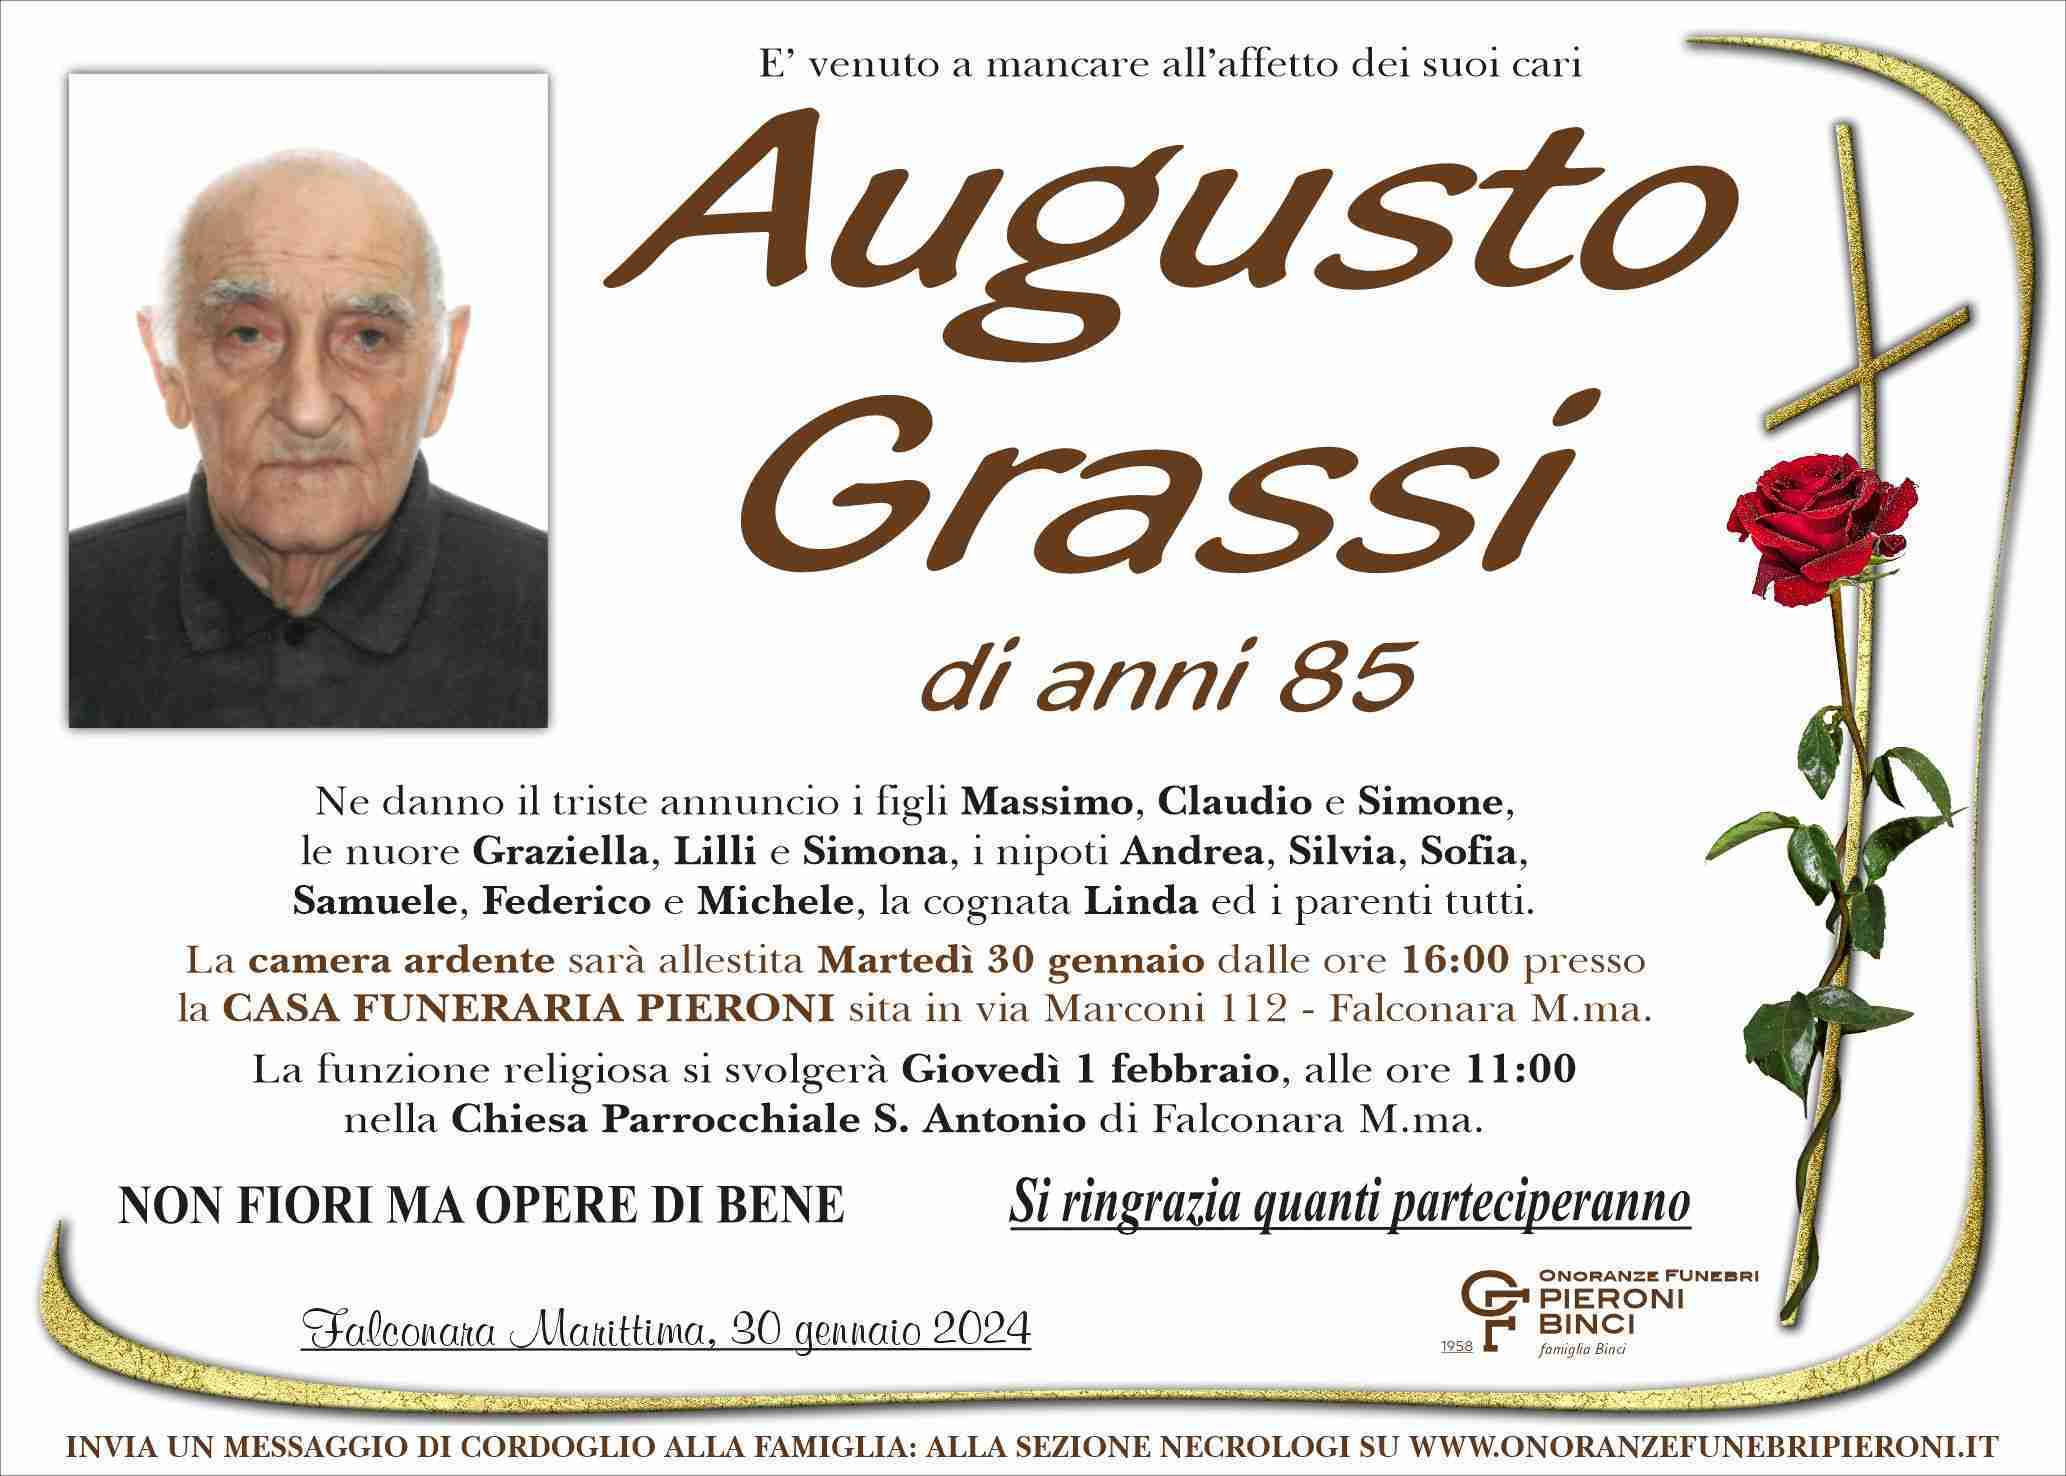 Augusto Grassi